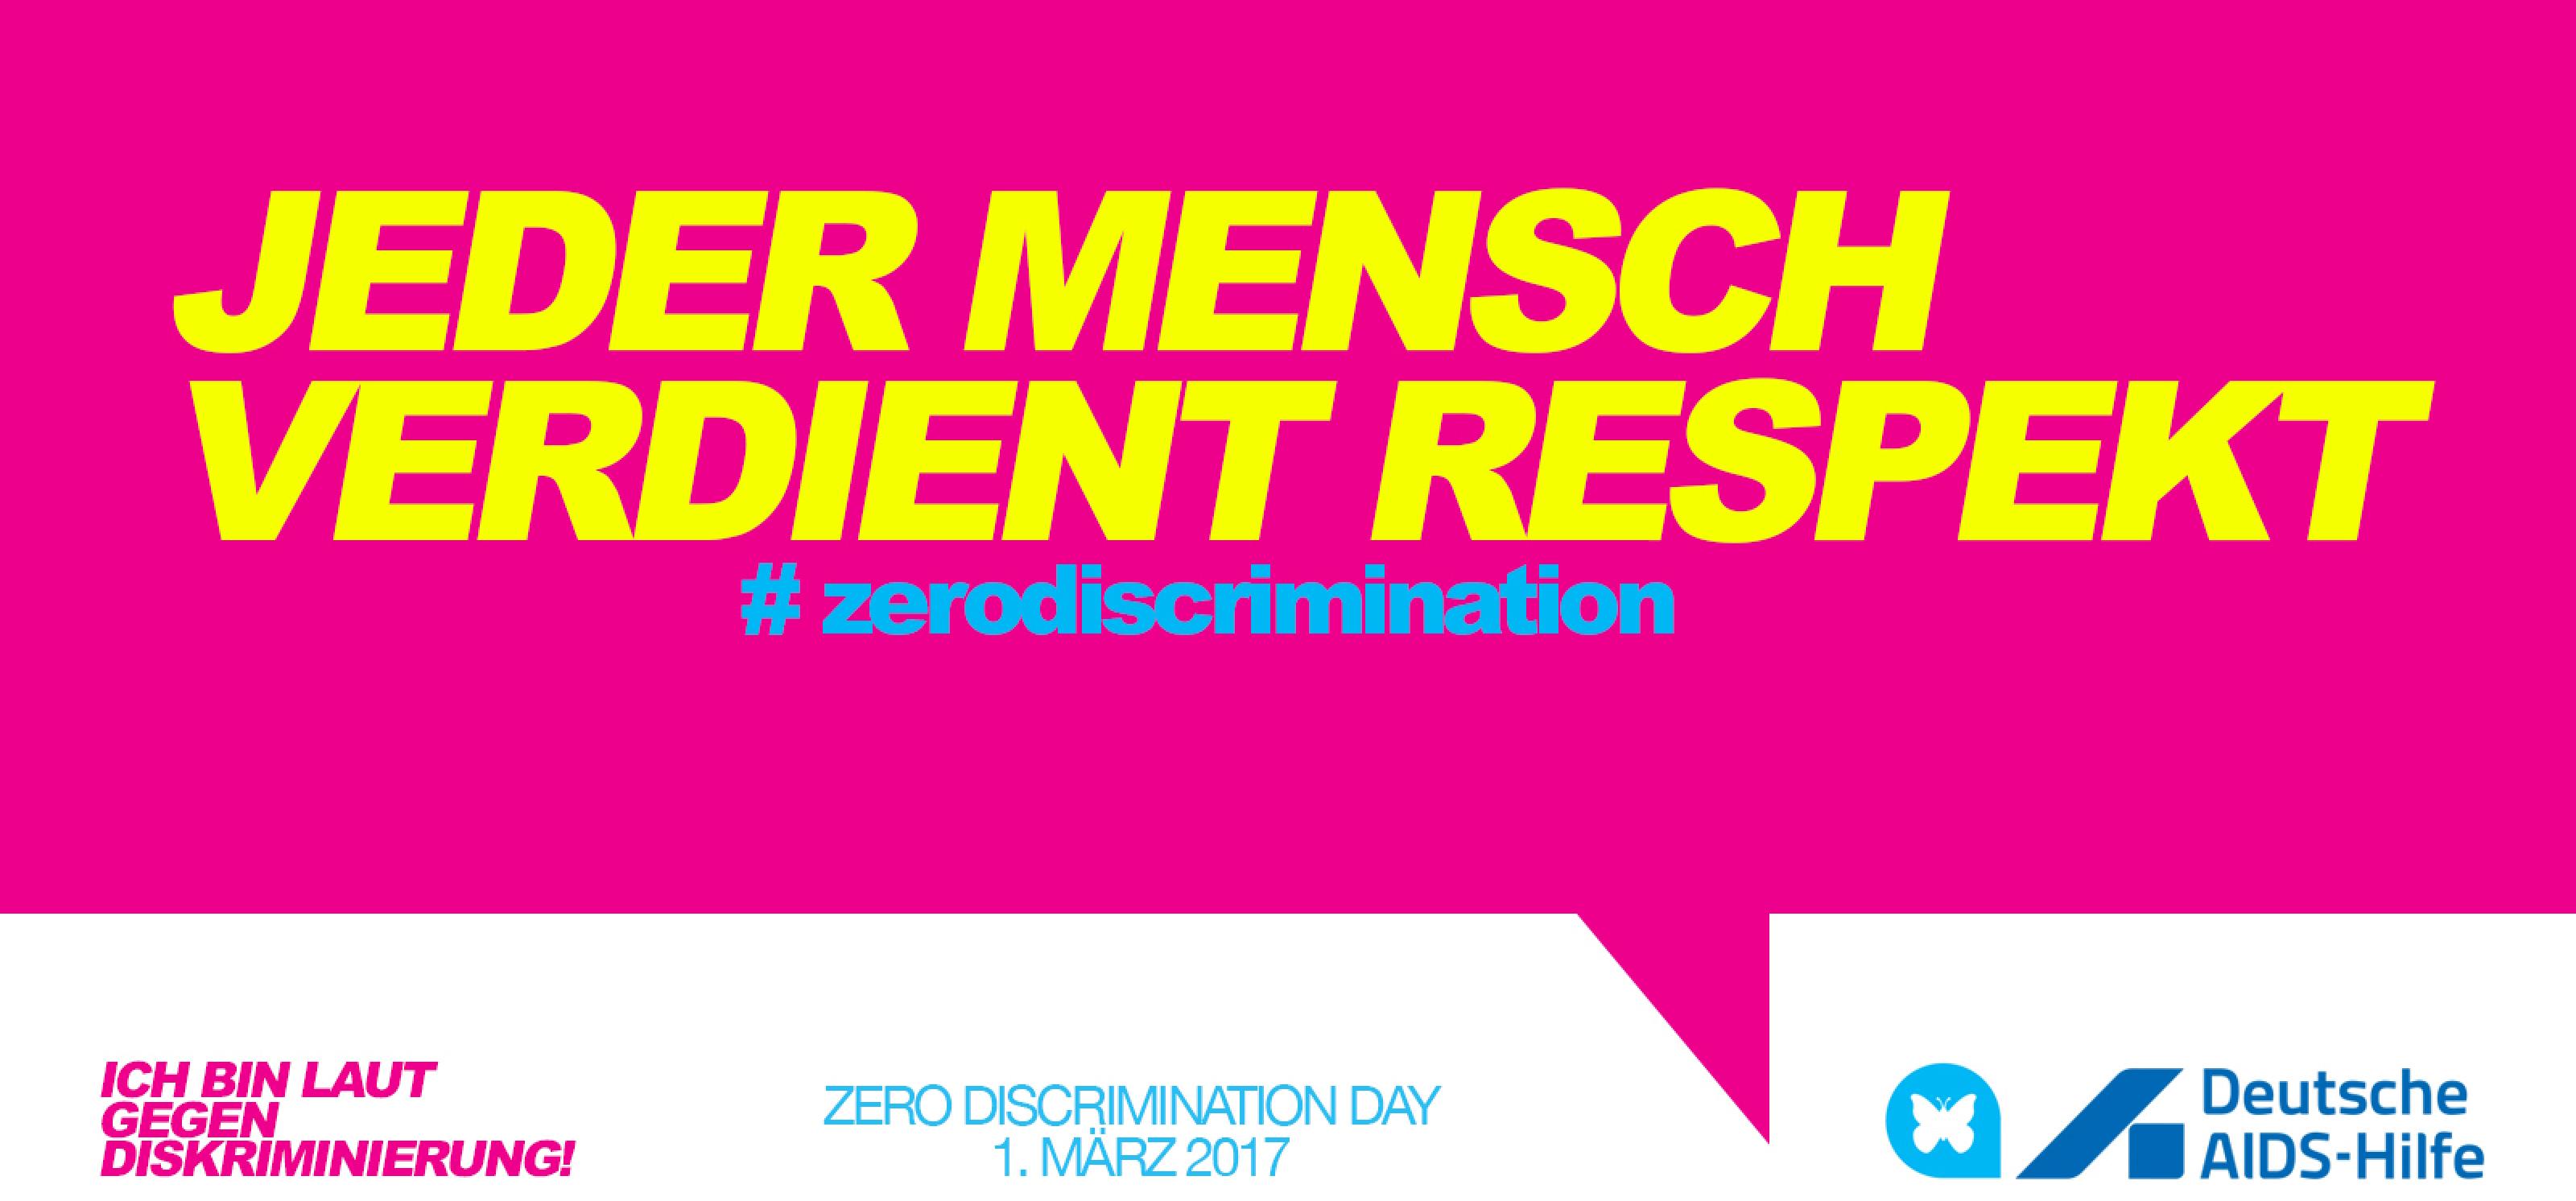 Auf einer pinken Sprechblase steht der Text "Jeder Mensch verdient Respekt. Zero Discrimination."